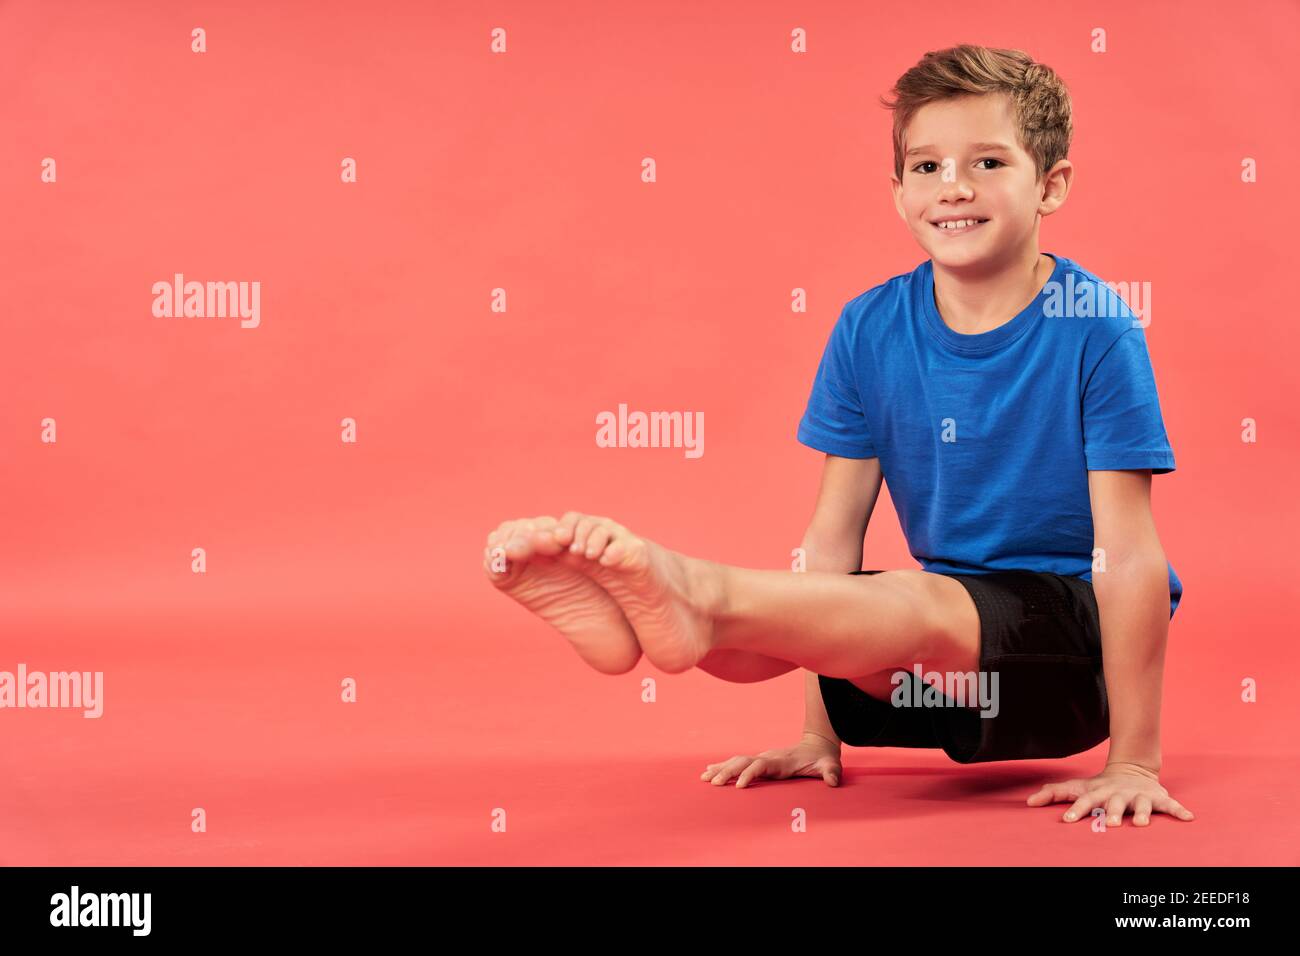 Adorable niño masculino en sportswear mirando cámara y sonriendo mientras se levanta y equilibra en dos manos Foto de stock